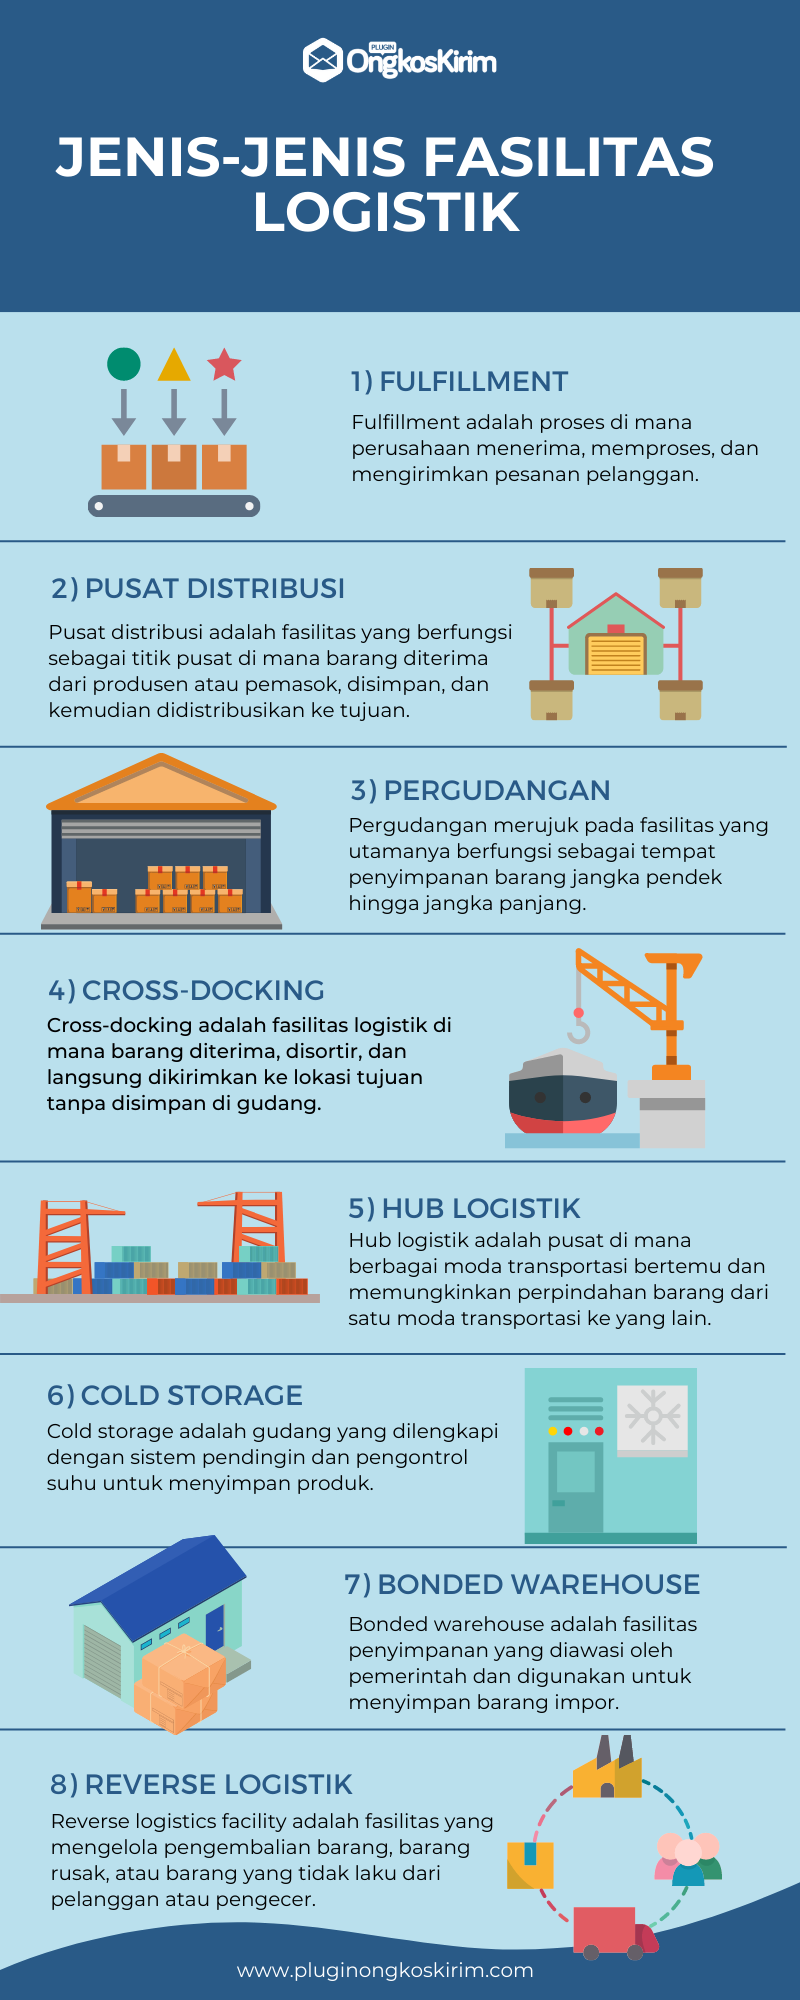 Jenis-jenis fasilitas logistik